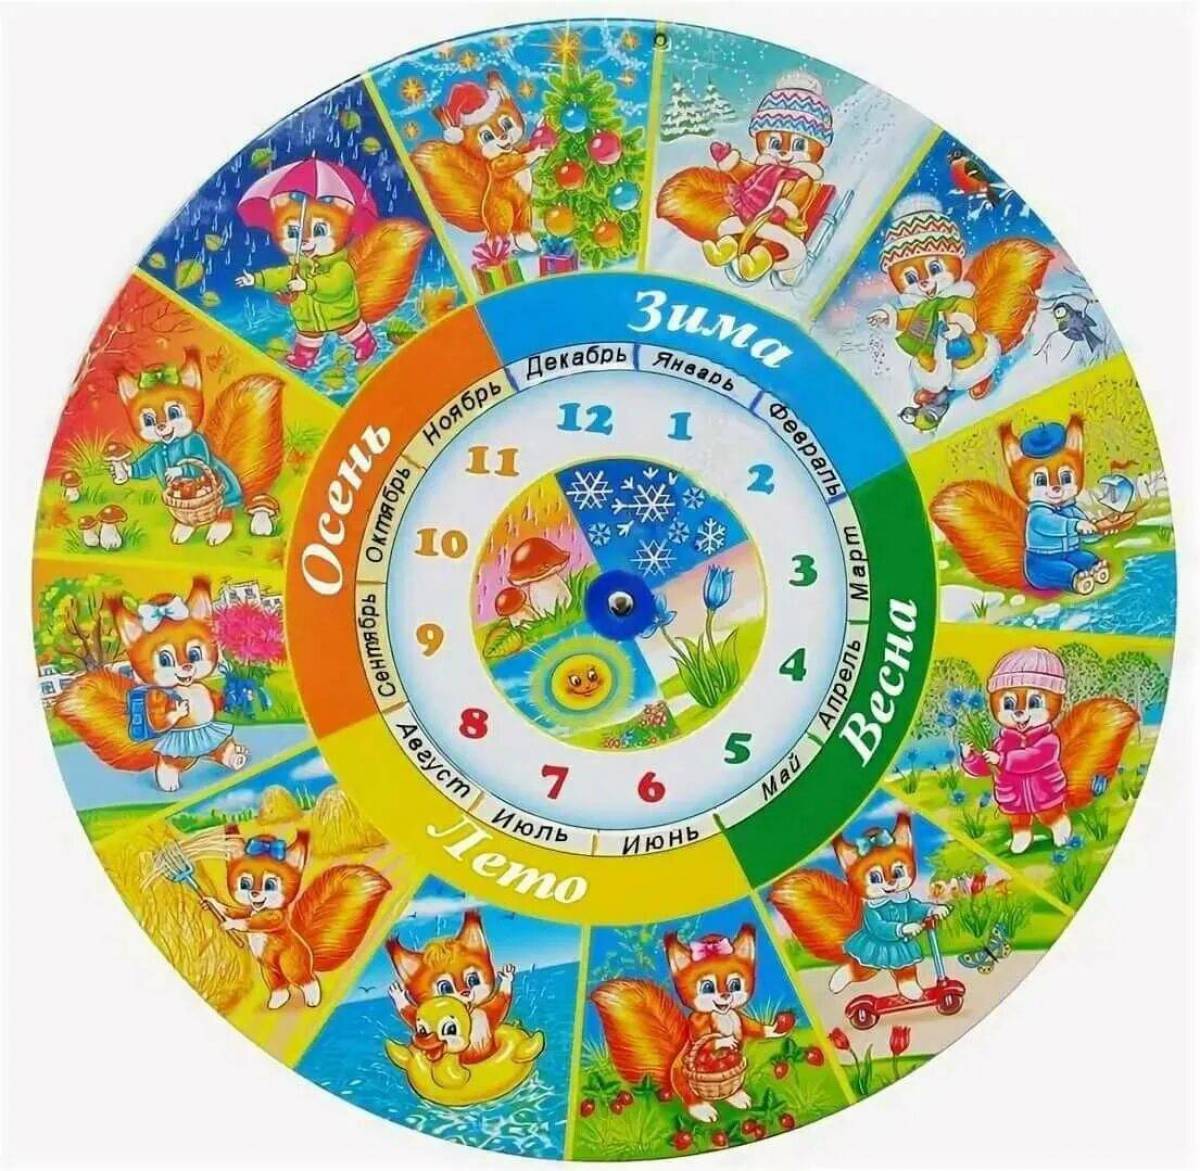 Повторяй дни недели. Календарь времена года. Круглый календарь для детей. Изображения времен года для детей. Календарь времен года для детского сада.